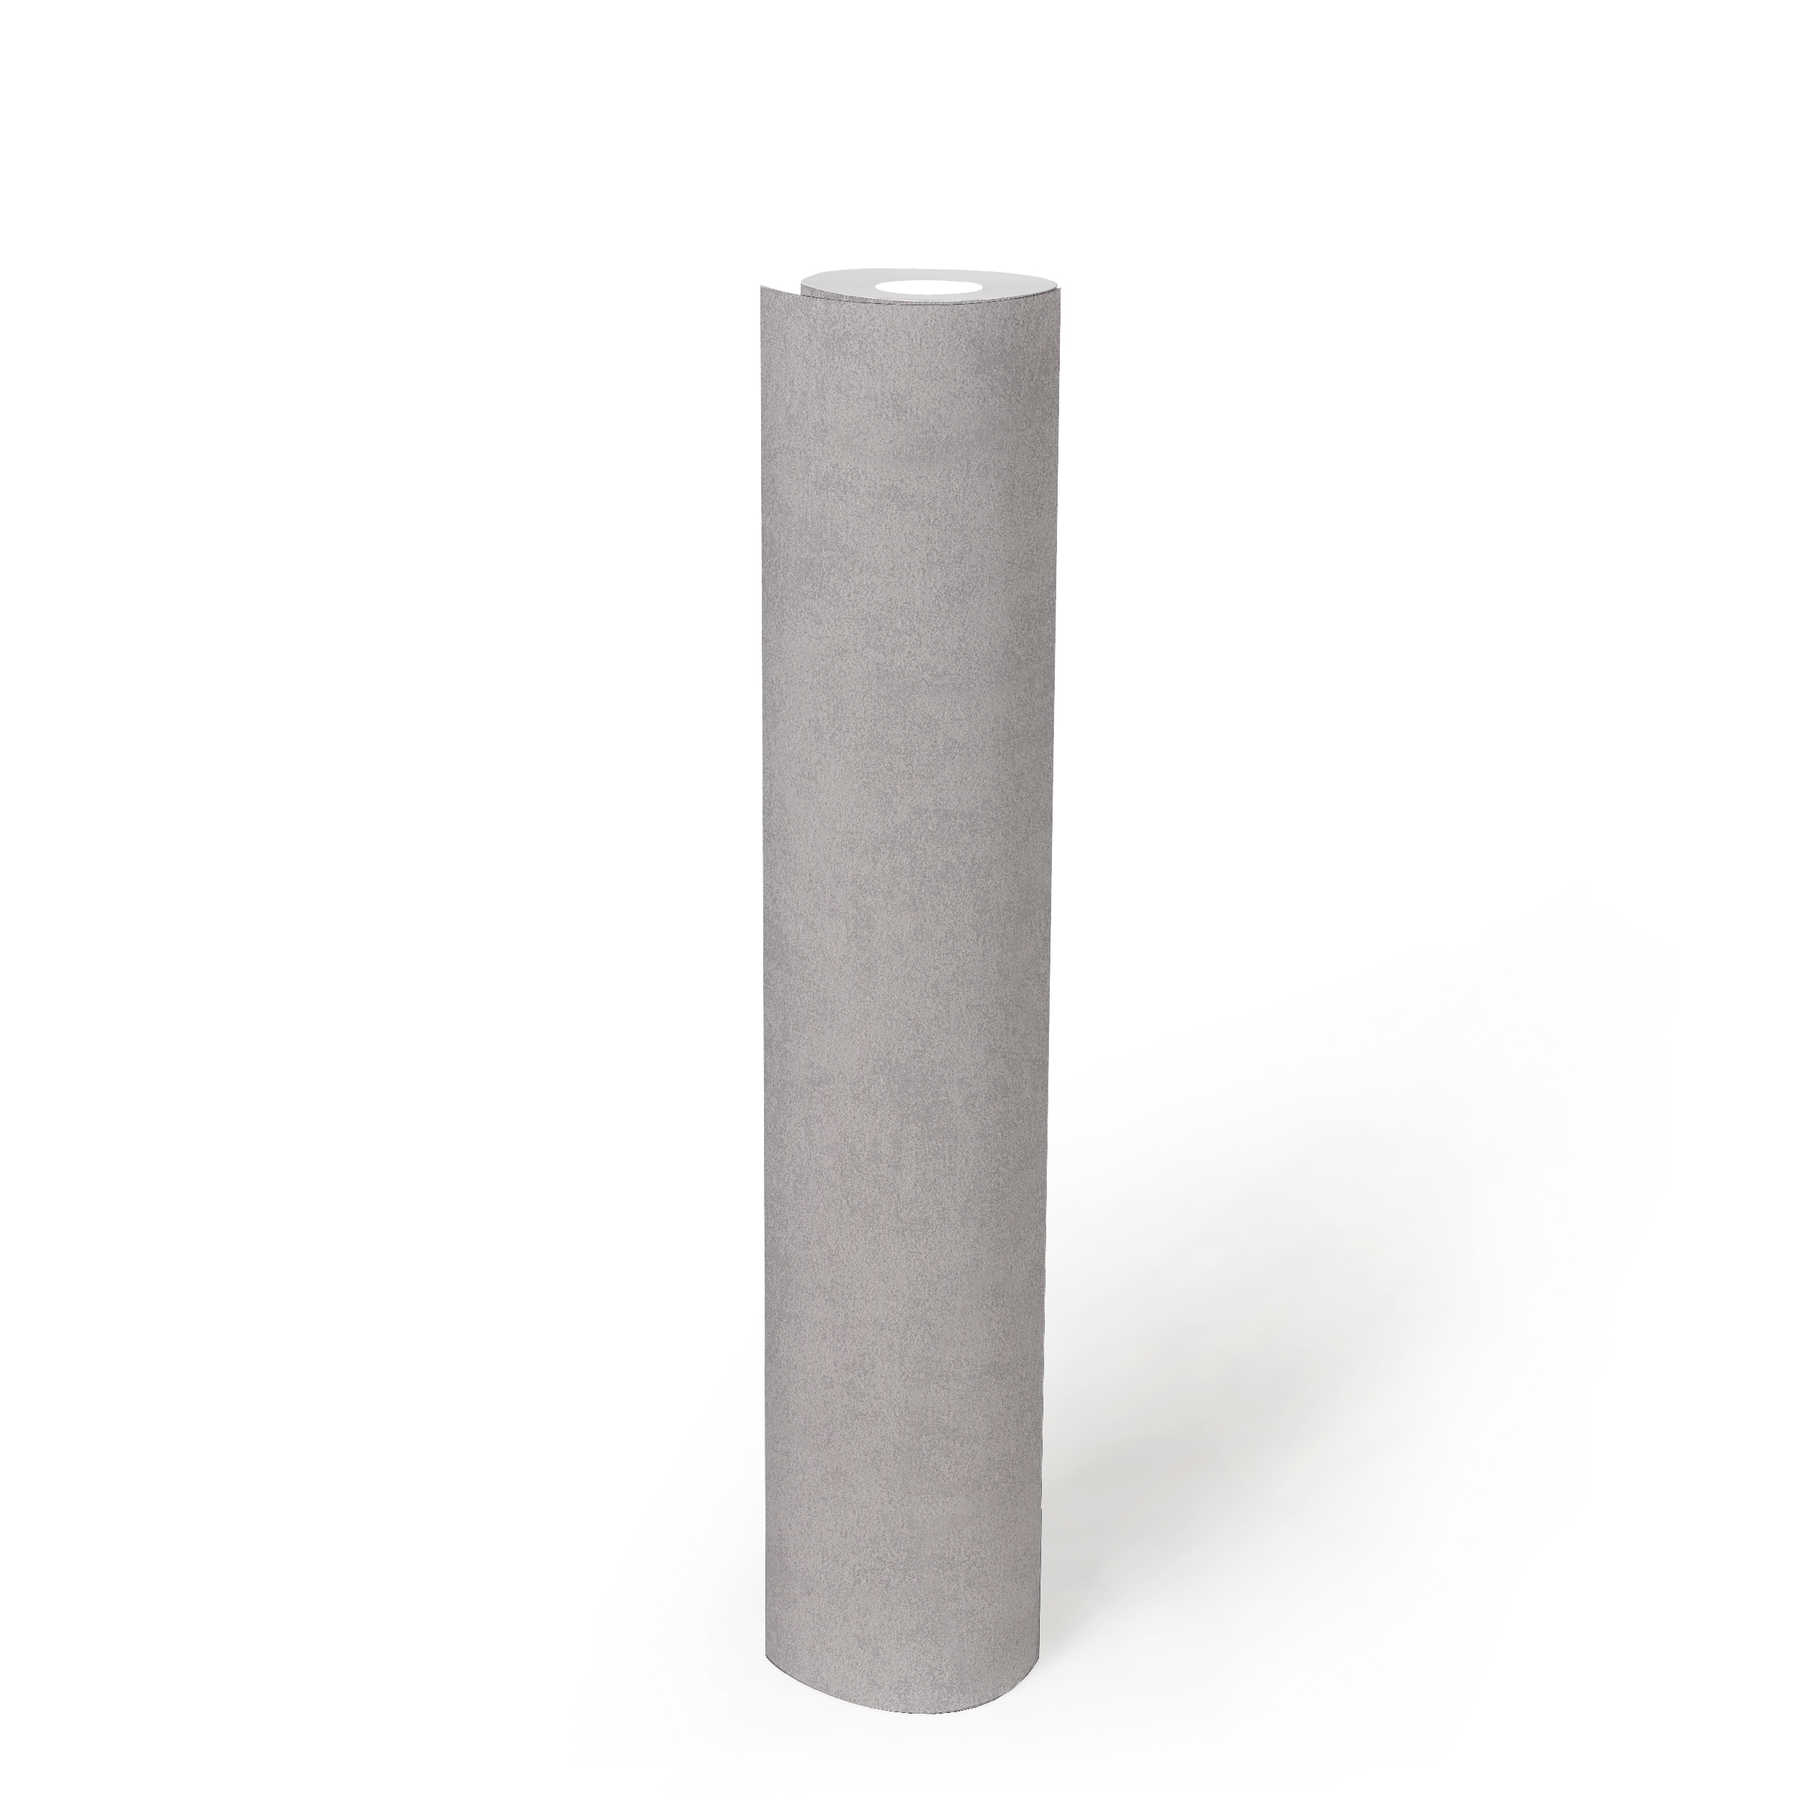             Carta da parati in tessuto non tessuto grigio cemento opaco con struttura in rilievo
        